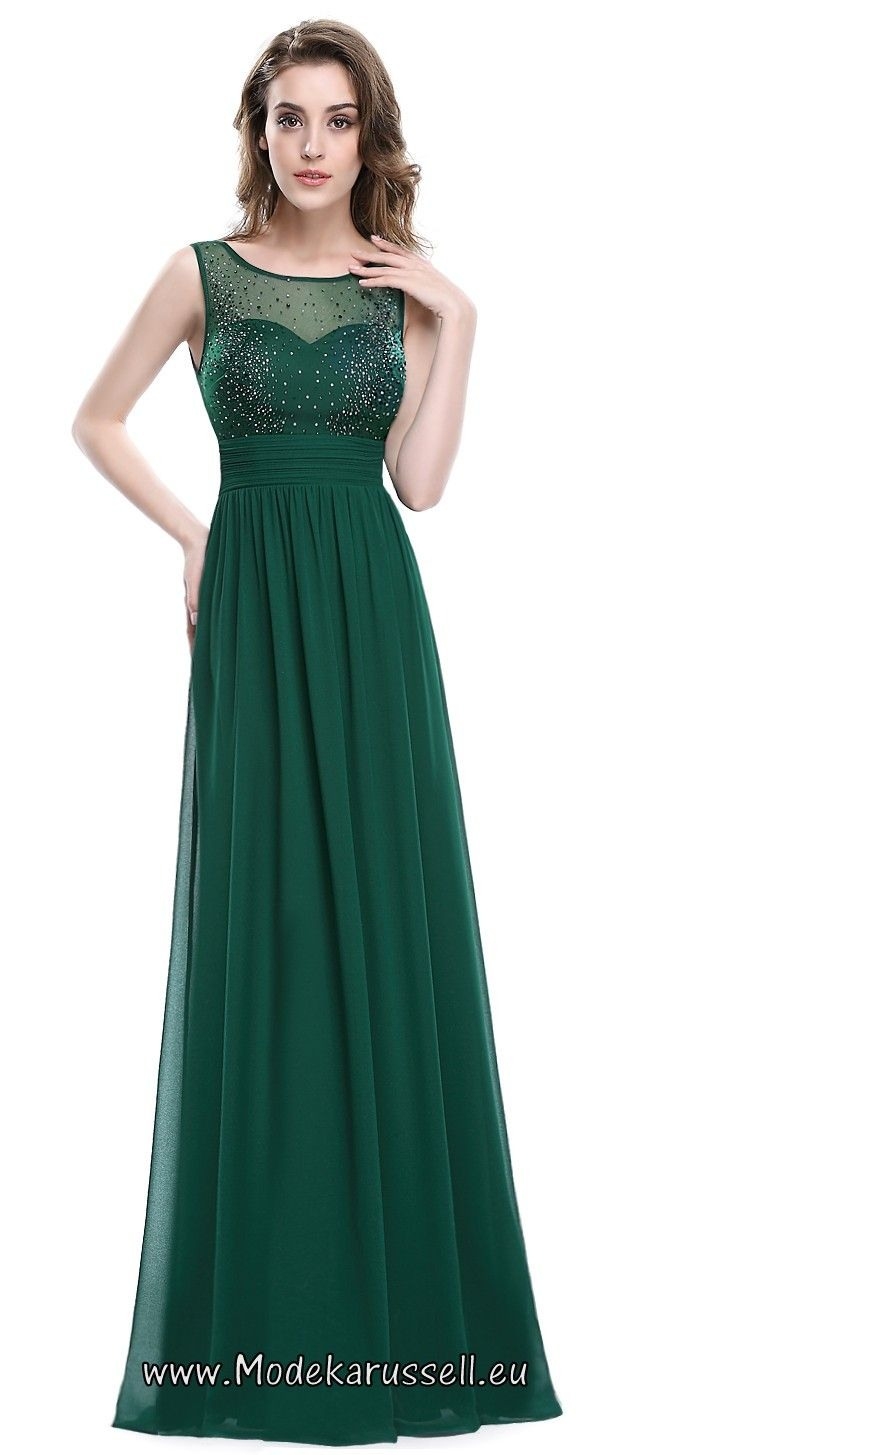 13 Elegant Abendkleid Grün Spezialgebiet15 Luxus Abendkleid Grün Design